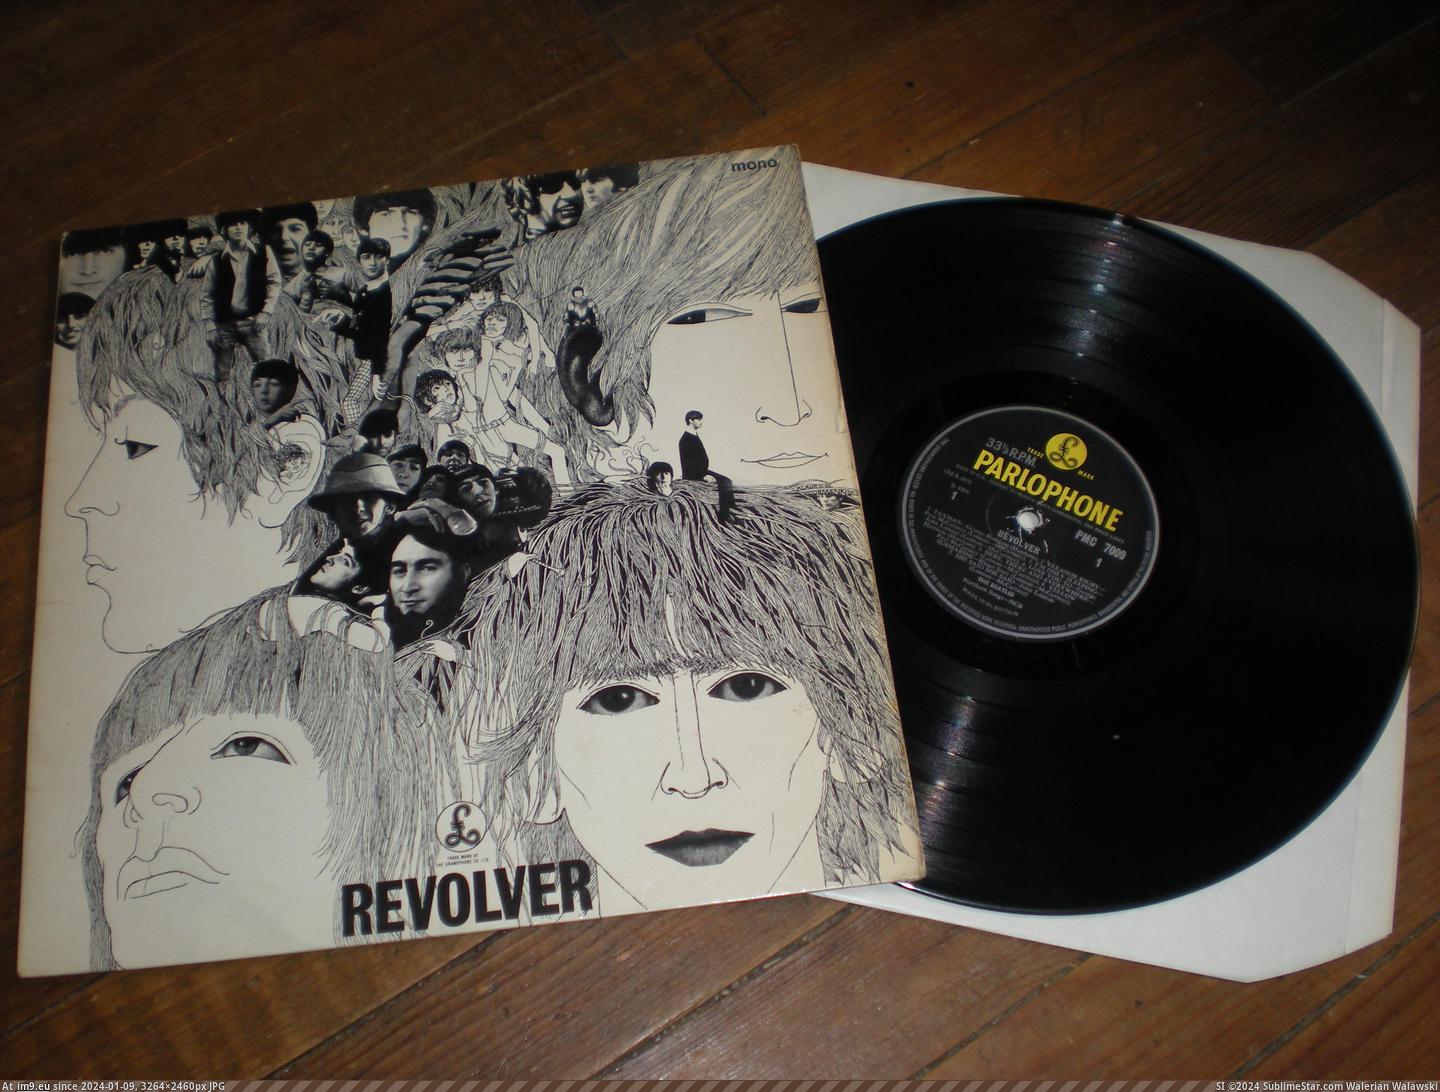  #Revolver  Revolver 15-07-14 2 Pic. (Bild von album new 1))